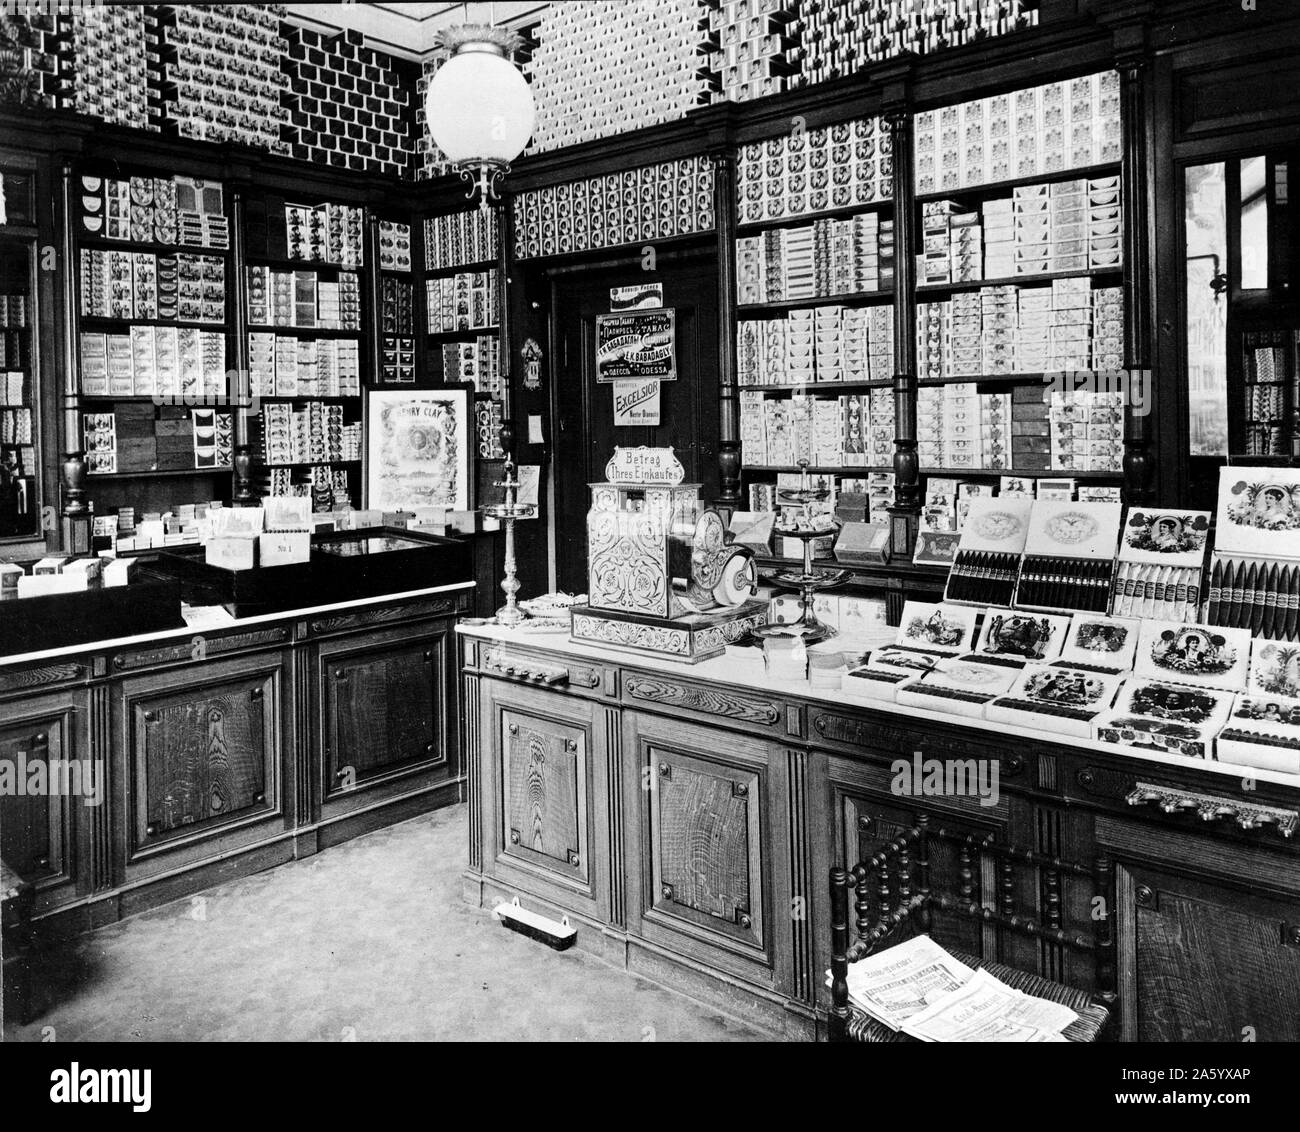 Foto von f.h. Marquardt Zigarren, Deutschland. Datiert 1940 Stockfoto